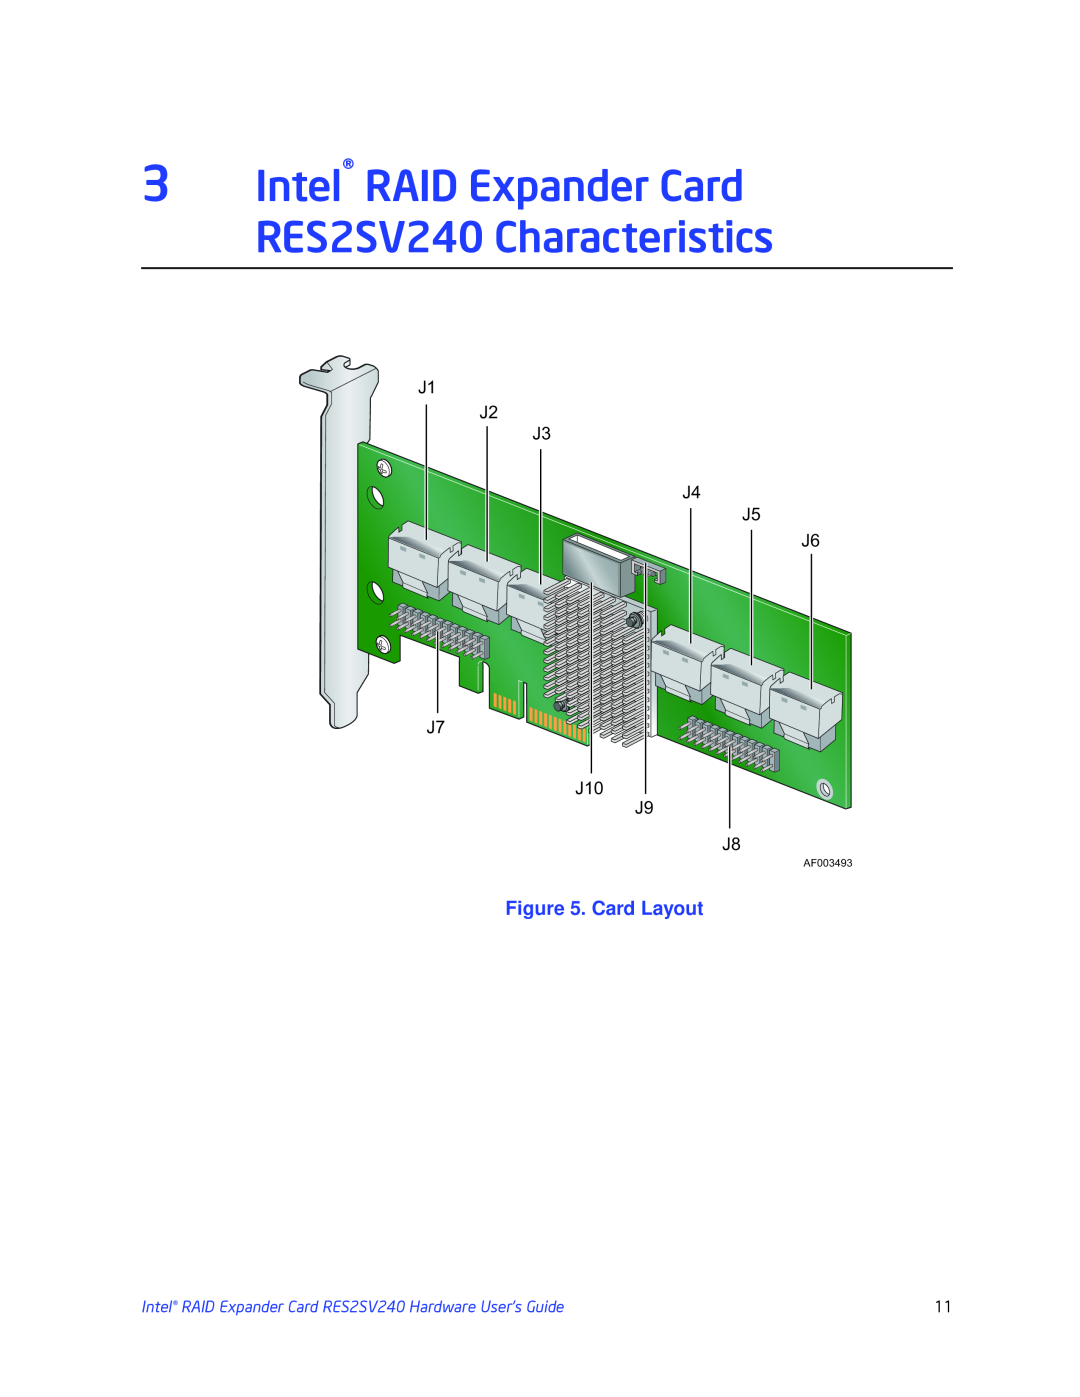 Intel RES2SV240 manual Card Layout, J1 J2 J3 J4 J5 J6 J7 J10 J9 J8 